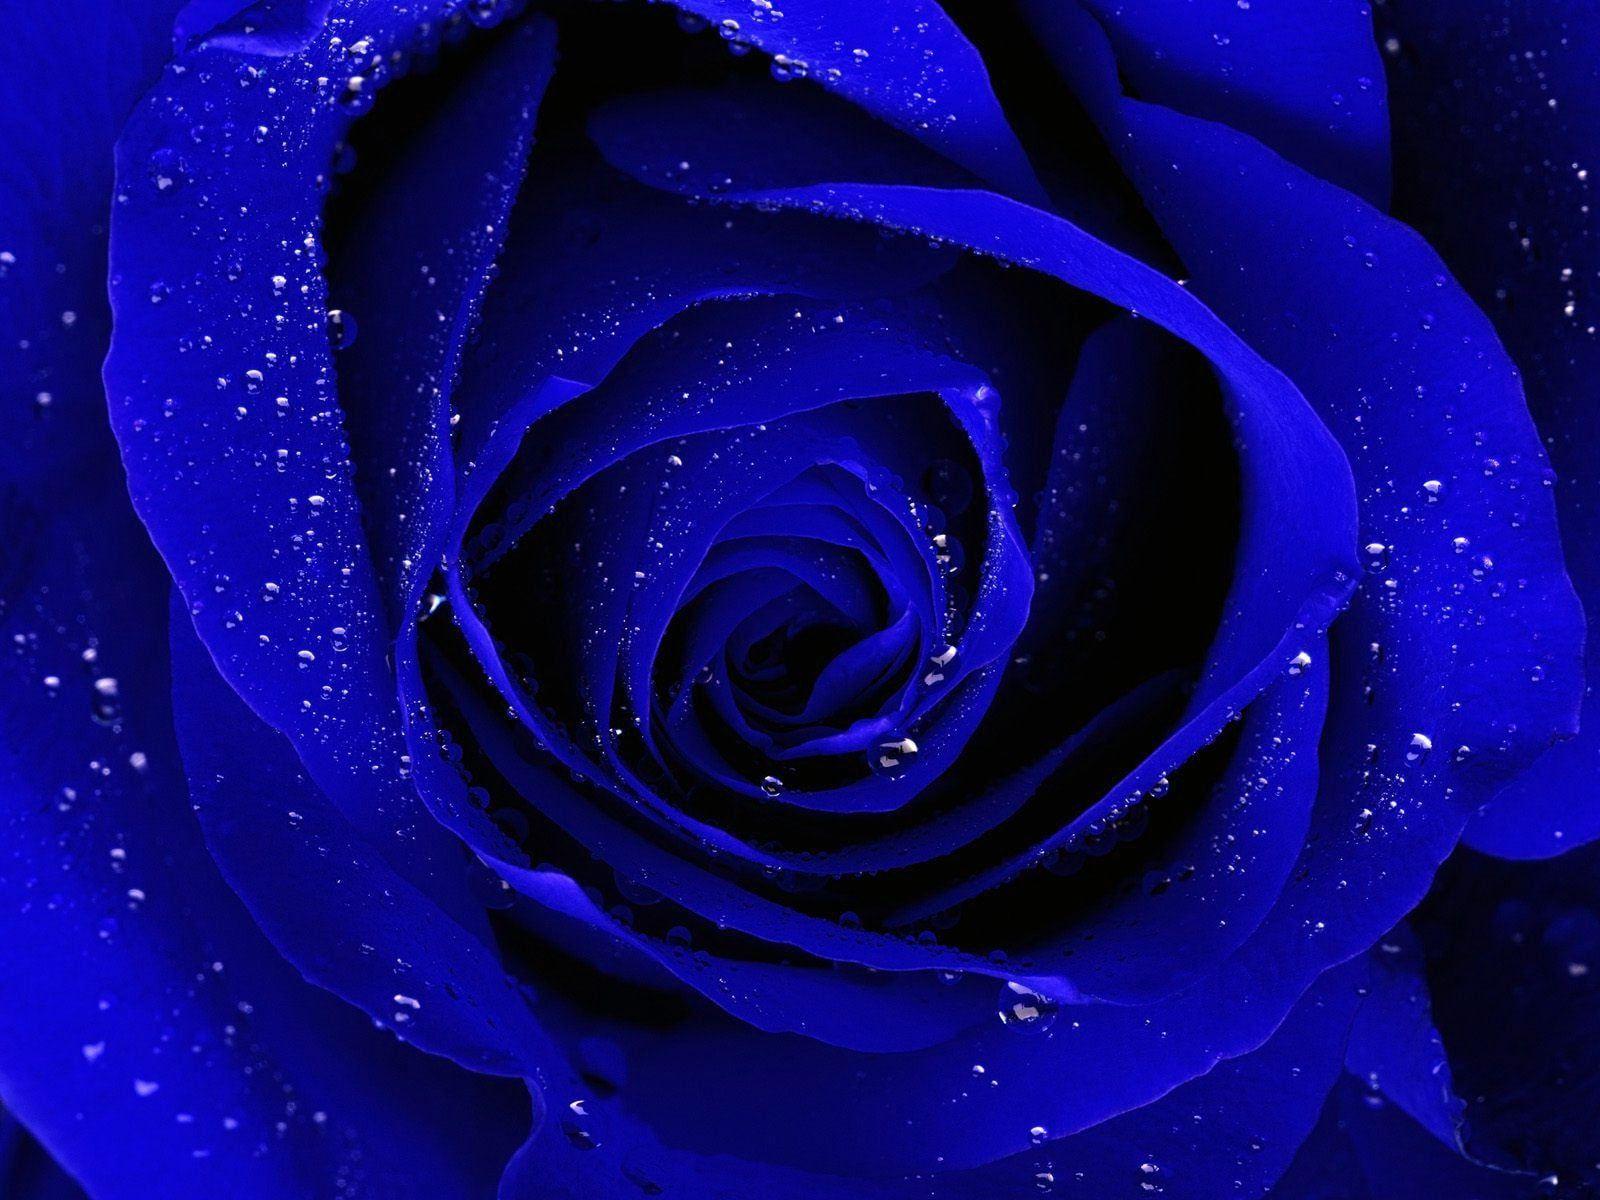 Blue rose HD Blue rose wallpaper for desktop and mobile